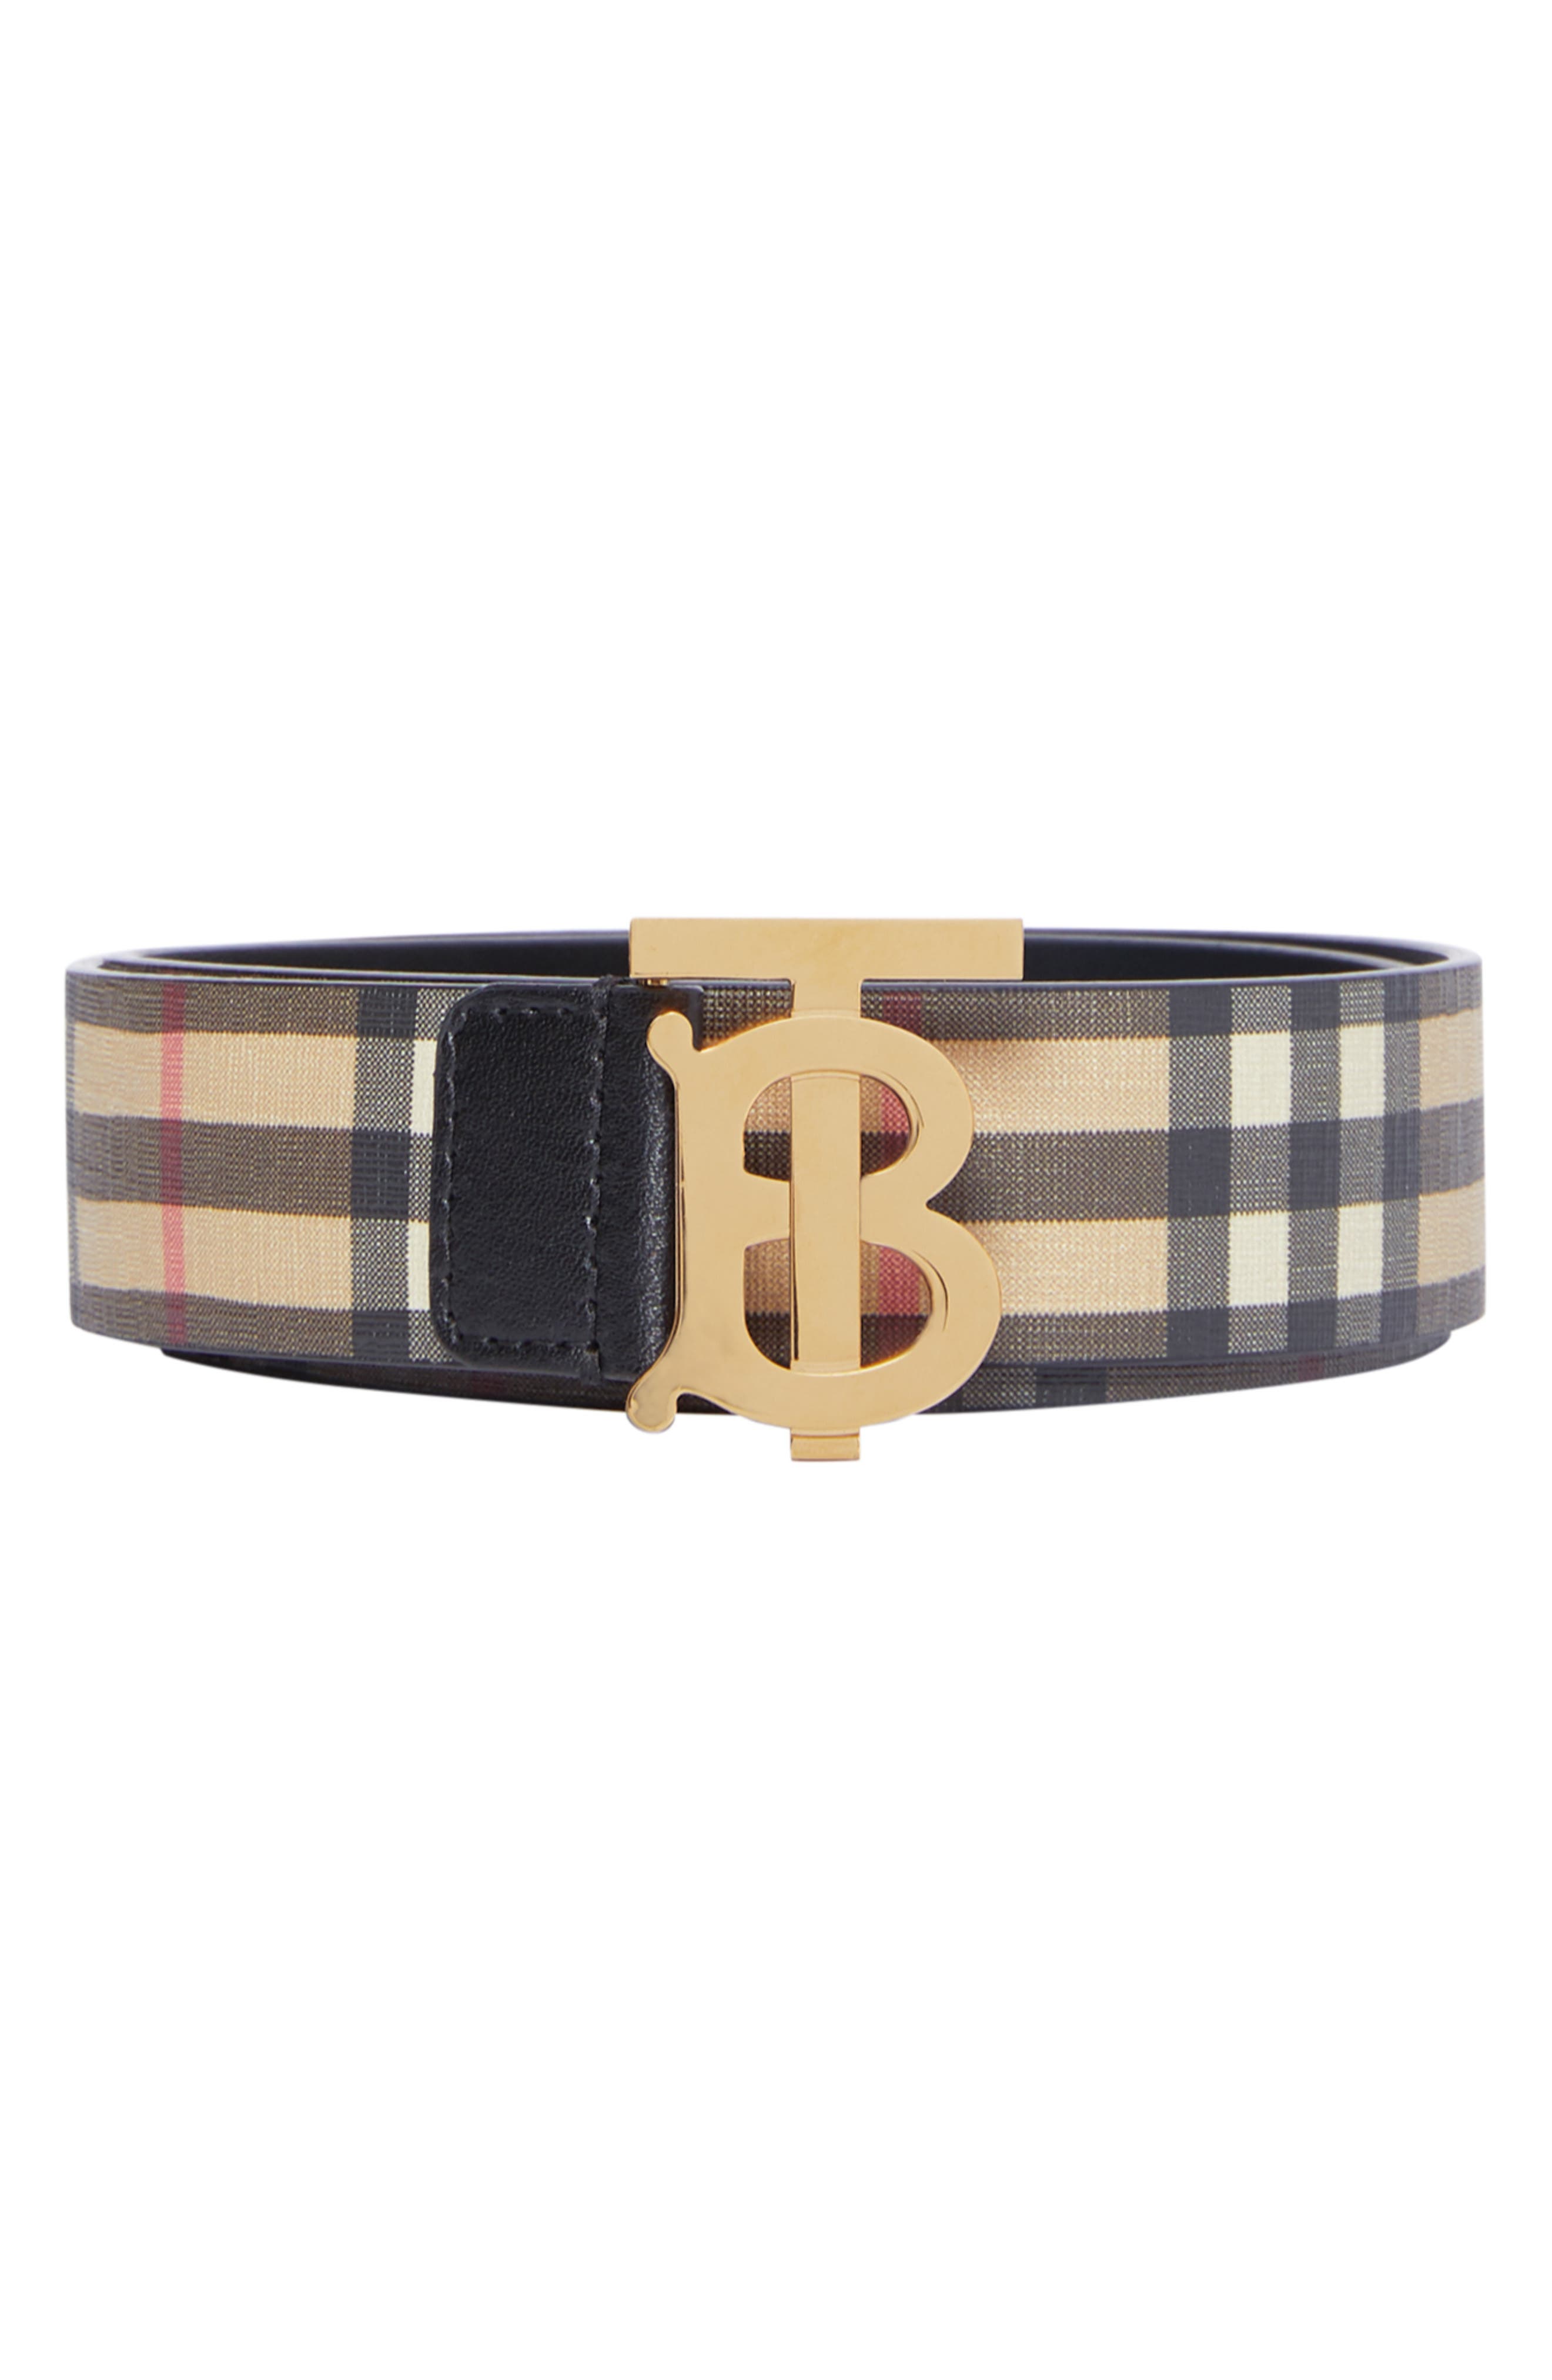 burberry womens belt